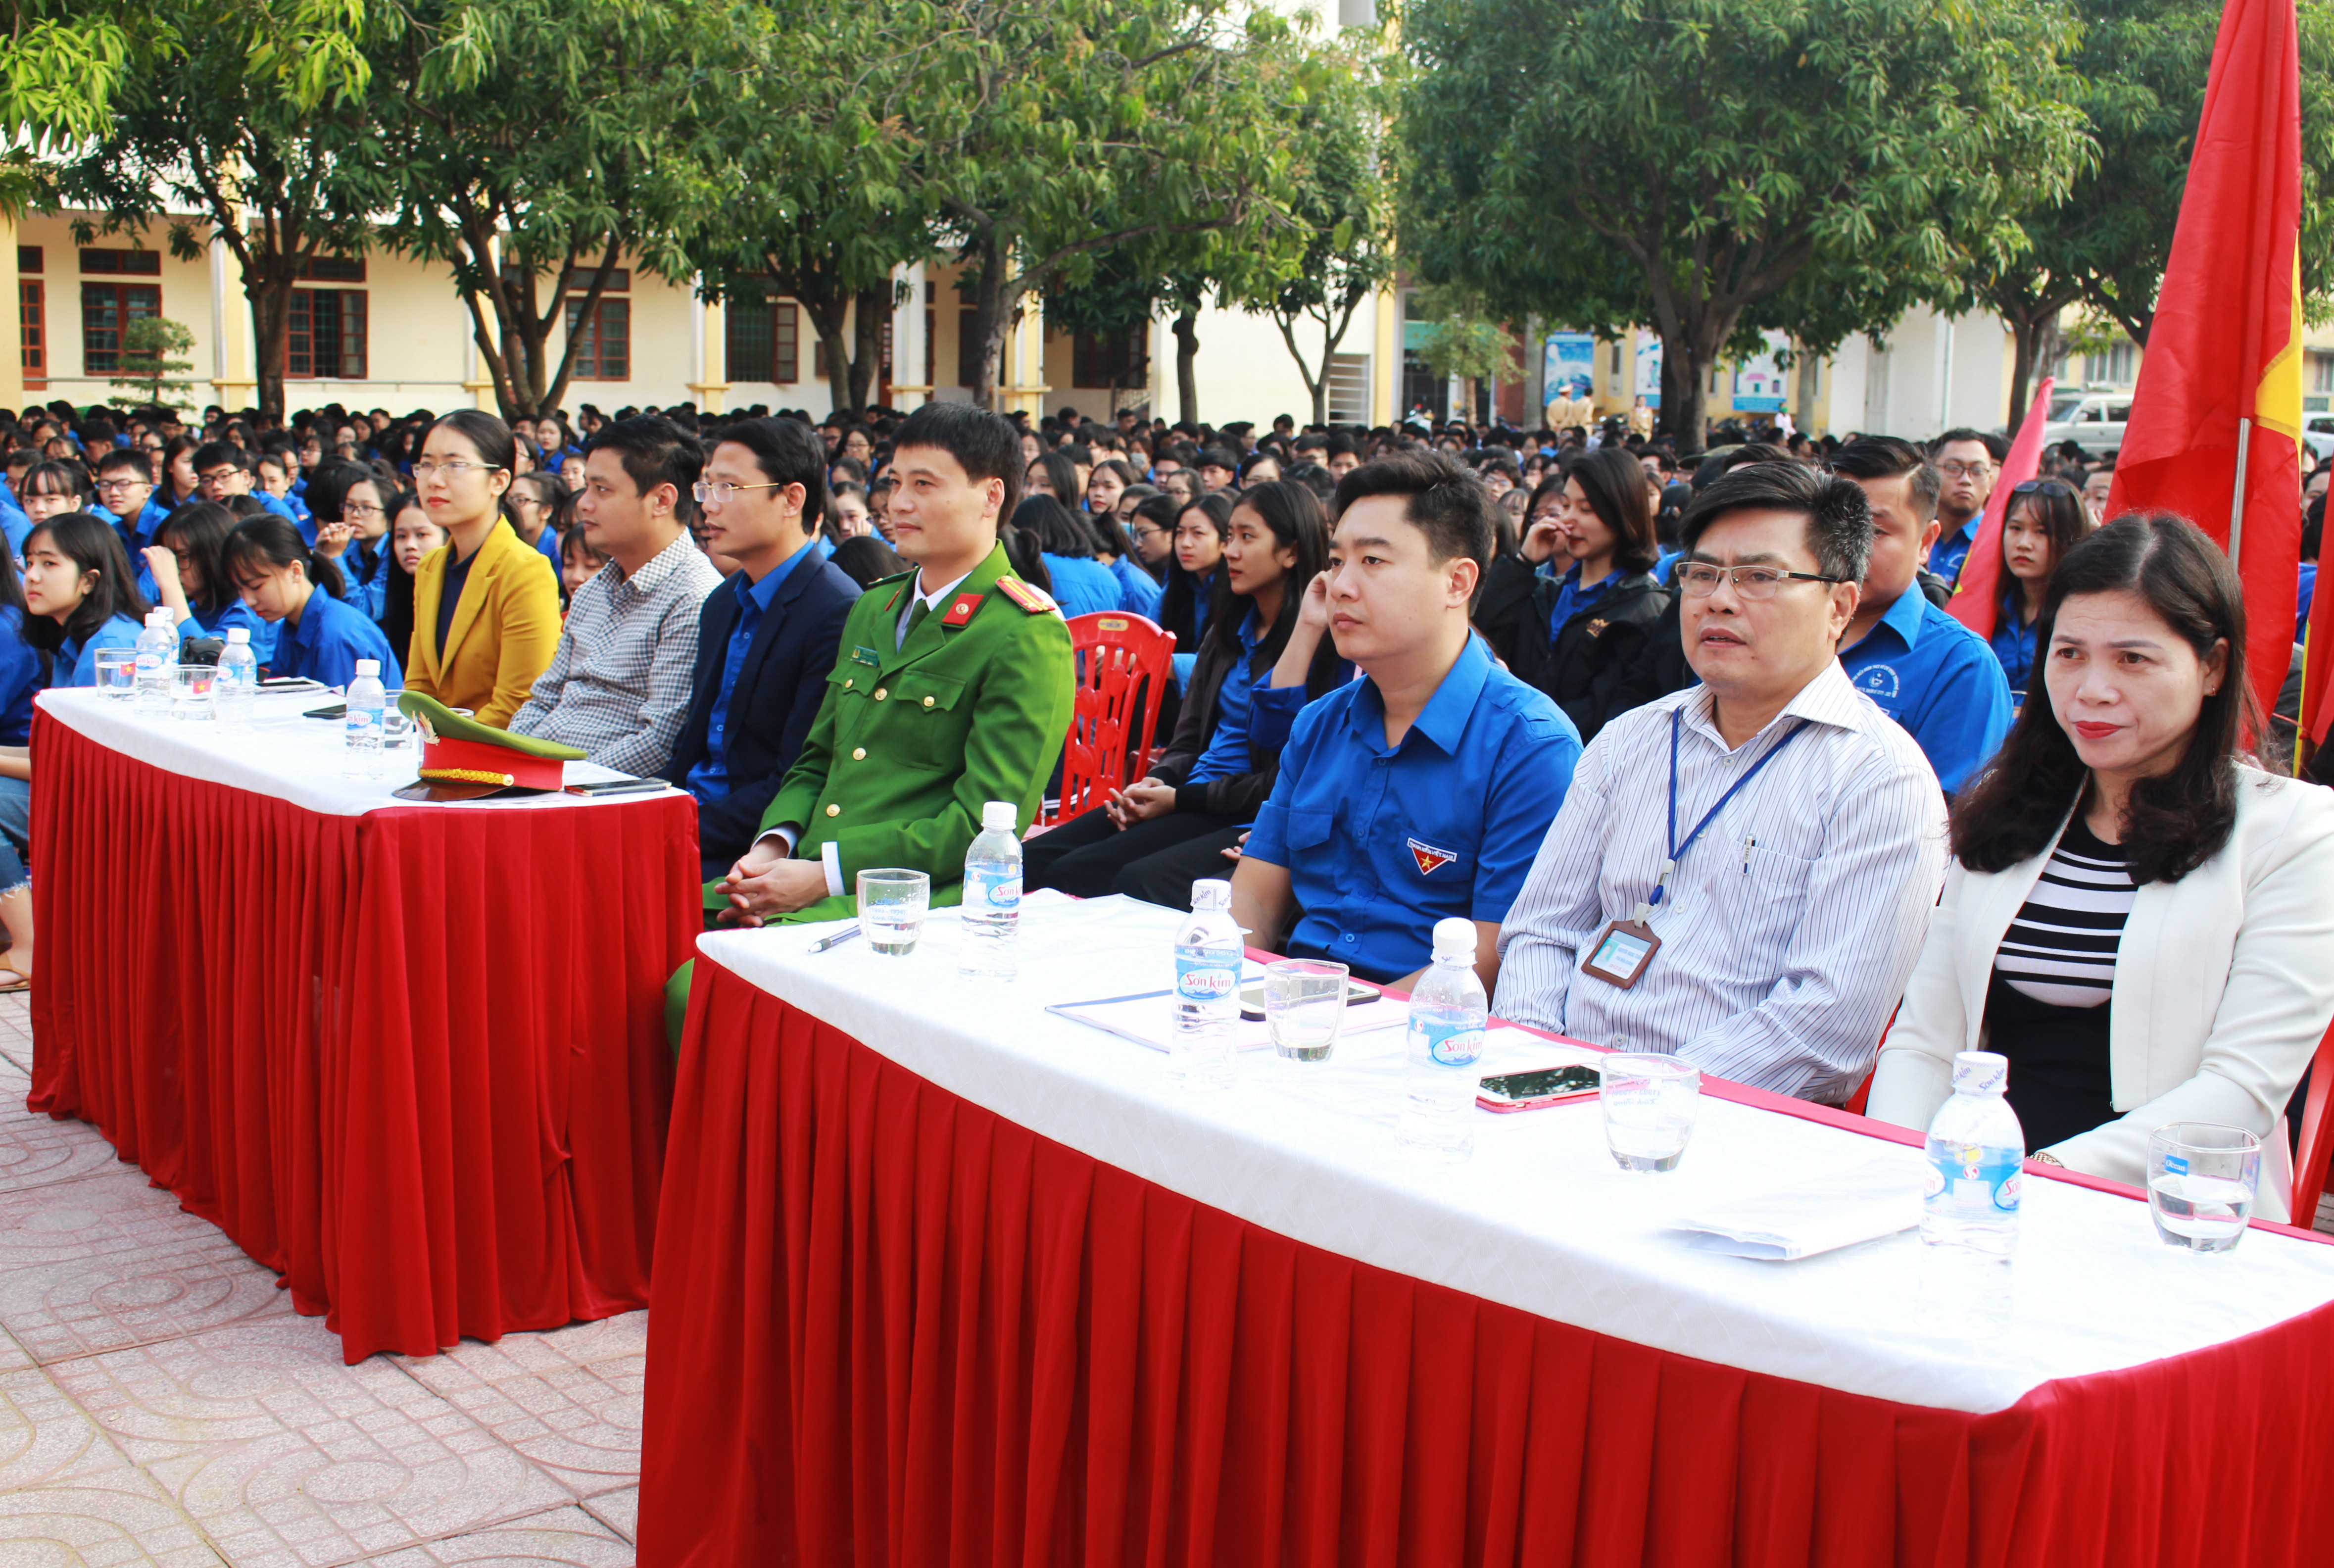 Tham dự buổi lễ có đại diện Tỉnh đoàn; Thành đoàn; Đoàn Công an thành phố Vinh; Ban tuyên giáo Thành phố; Ban giám hiệu, giáo viên và hơn 1.700 đoàn viên, thanh niên trường THPT Huỳnh Thúc Khánh. 